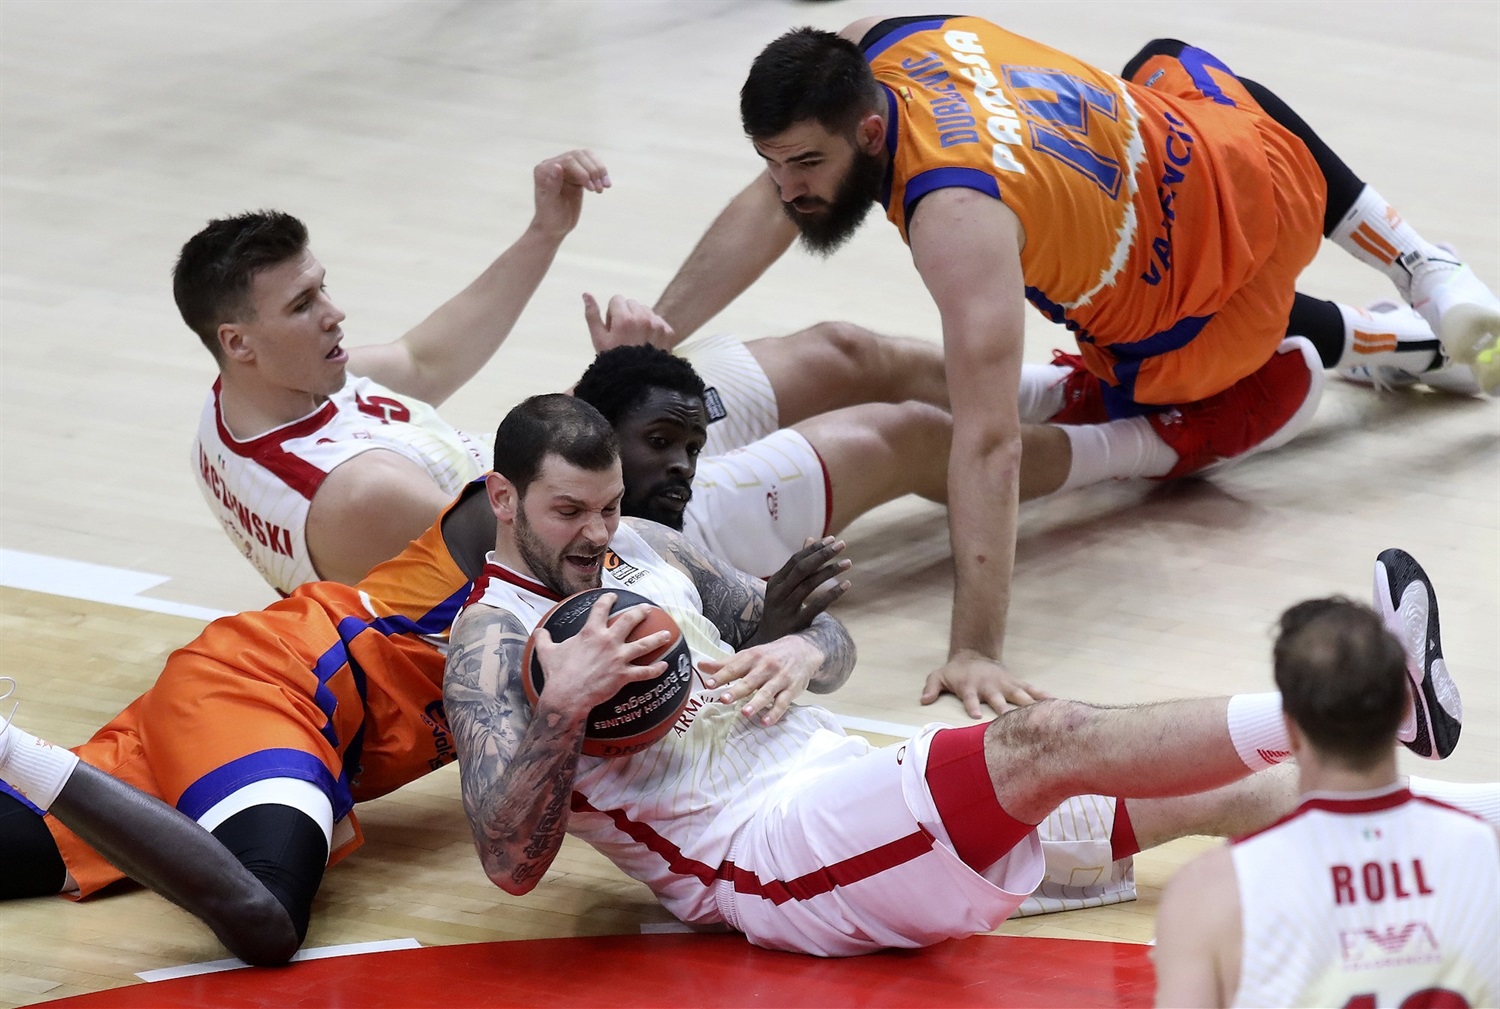 Lega Basket Serie A: Στραβοπάτημα για την Armani